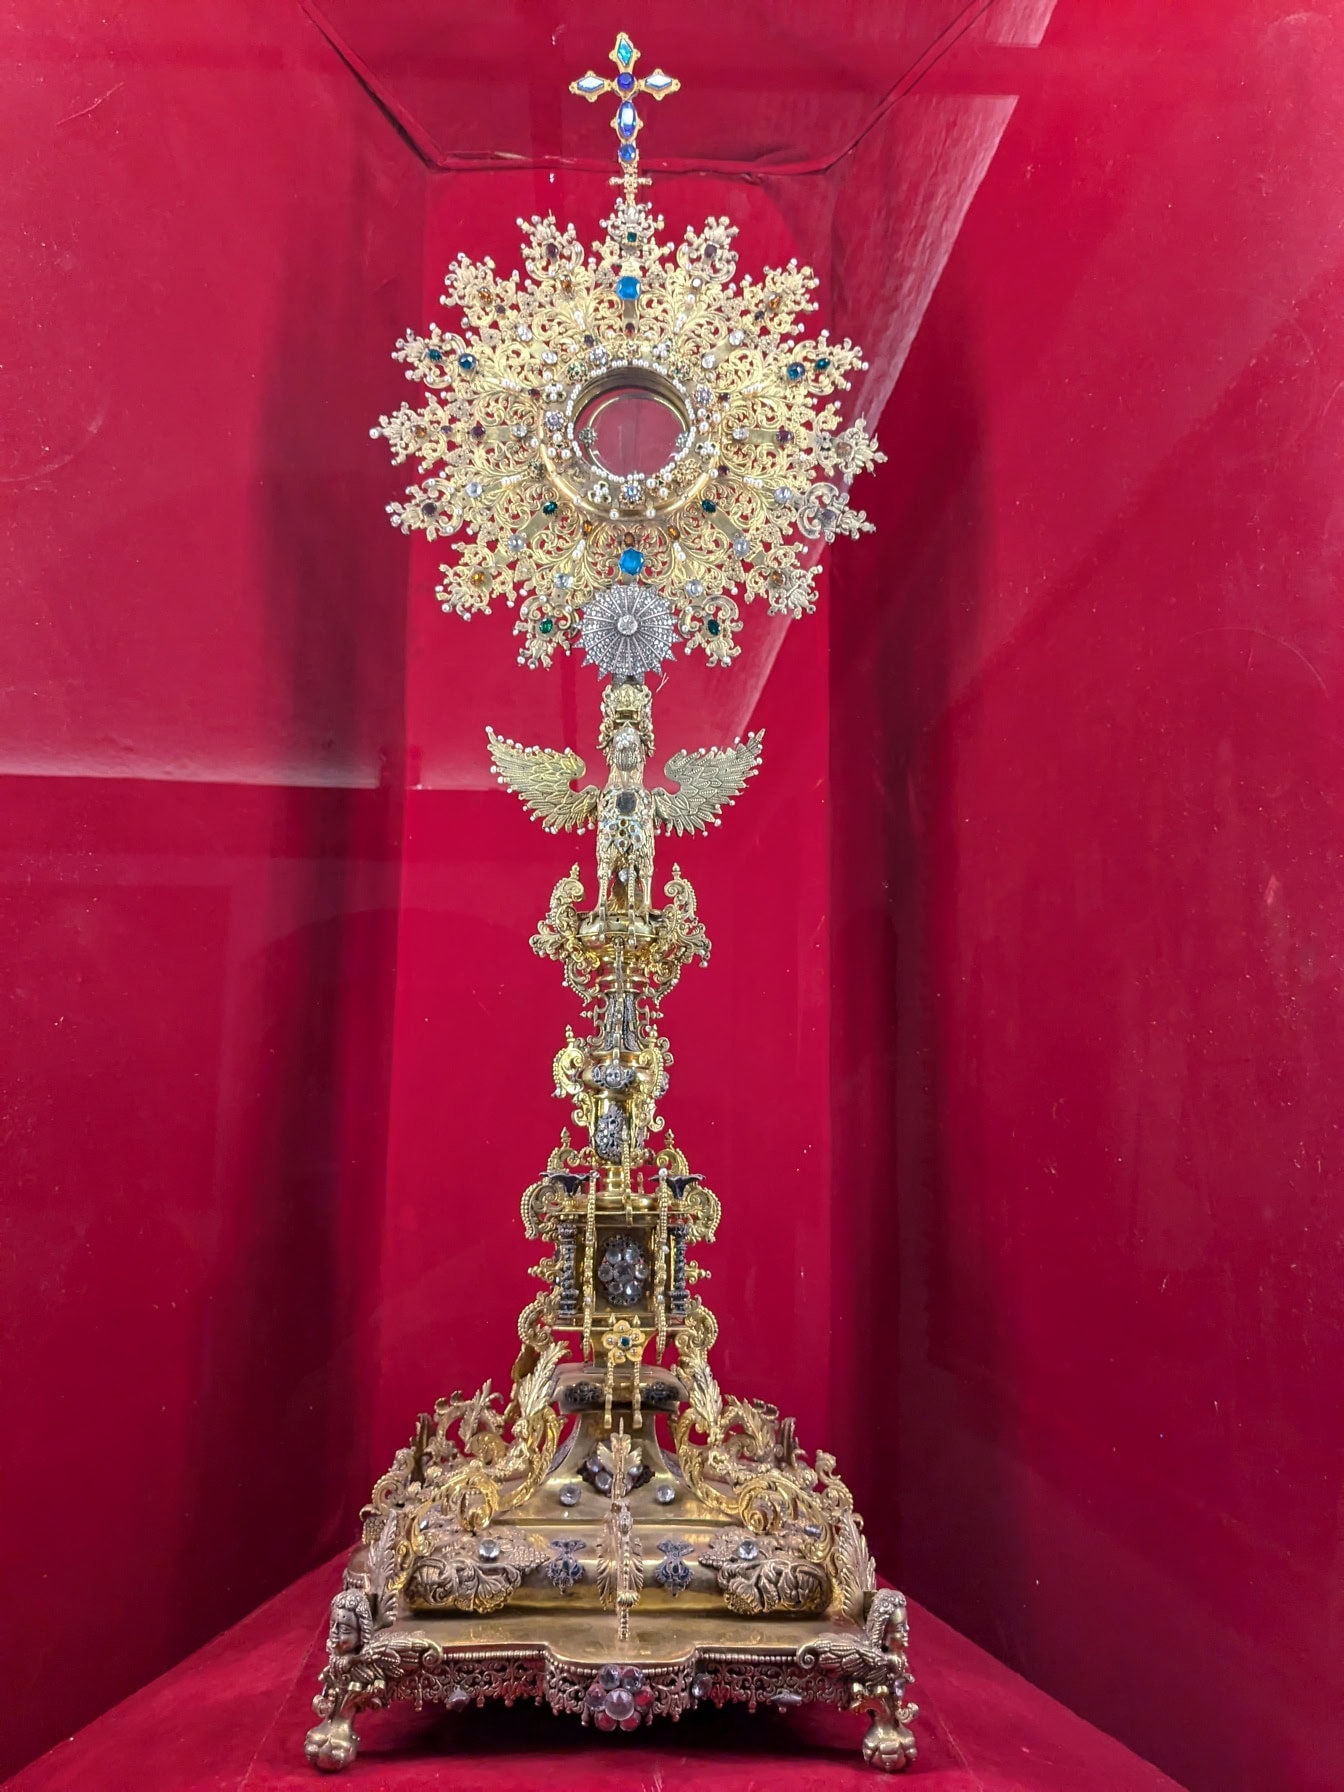 Det peruanska religiösa arvet ett utsmyckat gyllene föremål med ett kors, utställt i jesuitkyrkan i Arequipa i Peru